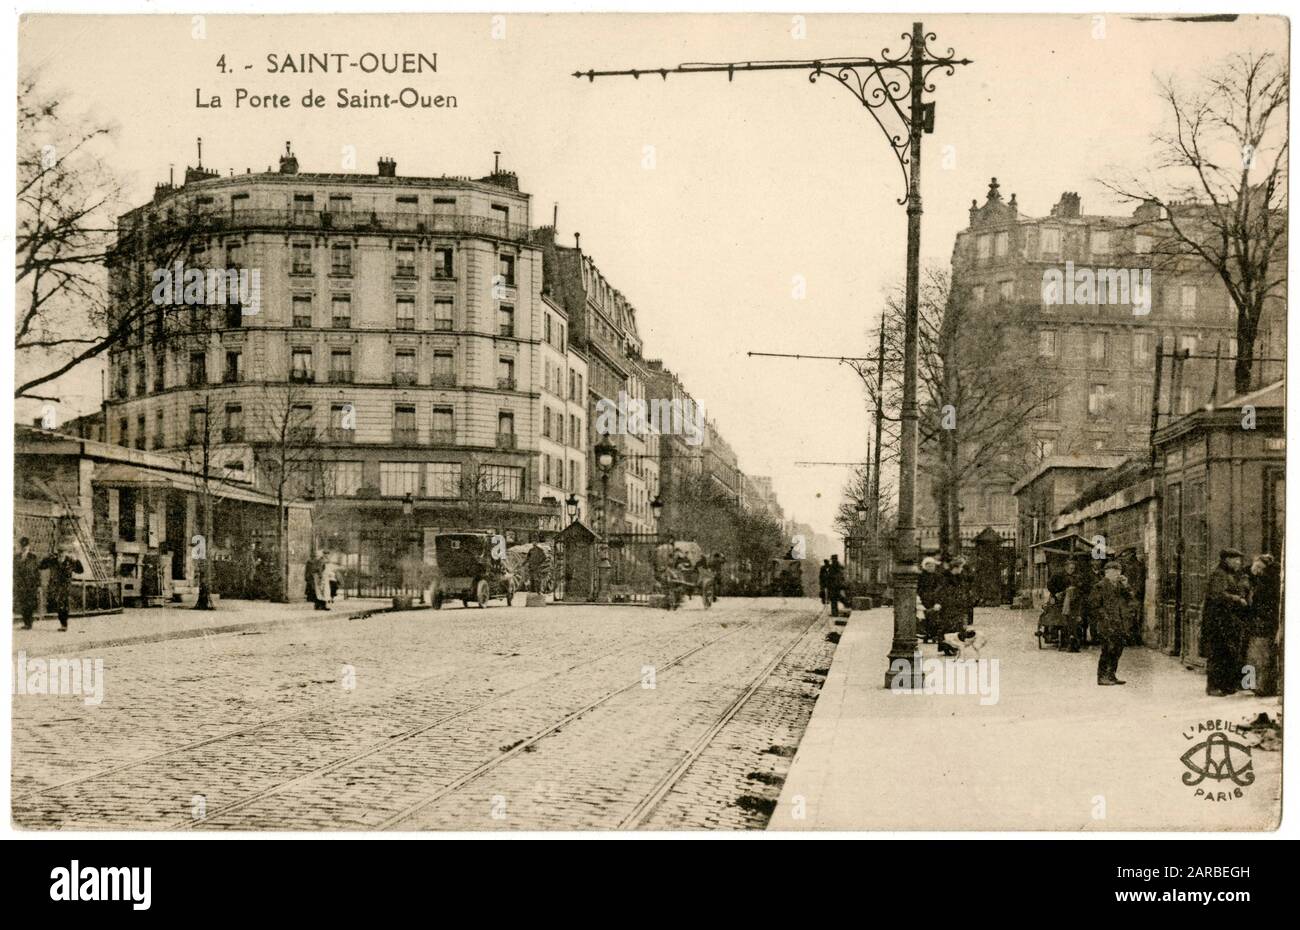 La porte de St Ouen, al confine tra il 17° e il 18° arrondissement, Parigi, Francia. Era un cancello del muro di Thiers del XIX secolo e diede anche il nome a una stazione della metropolitana (aperta nel 1911). Foto Stock